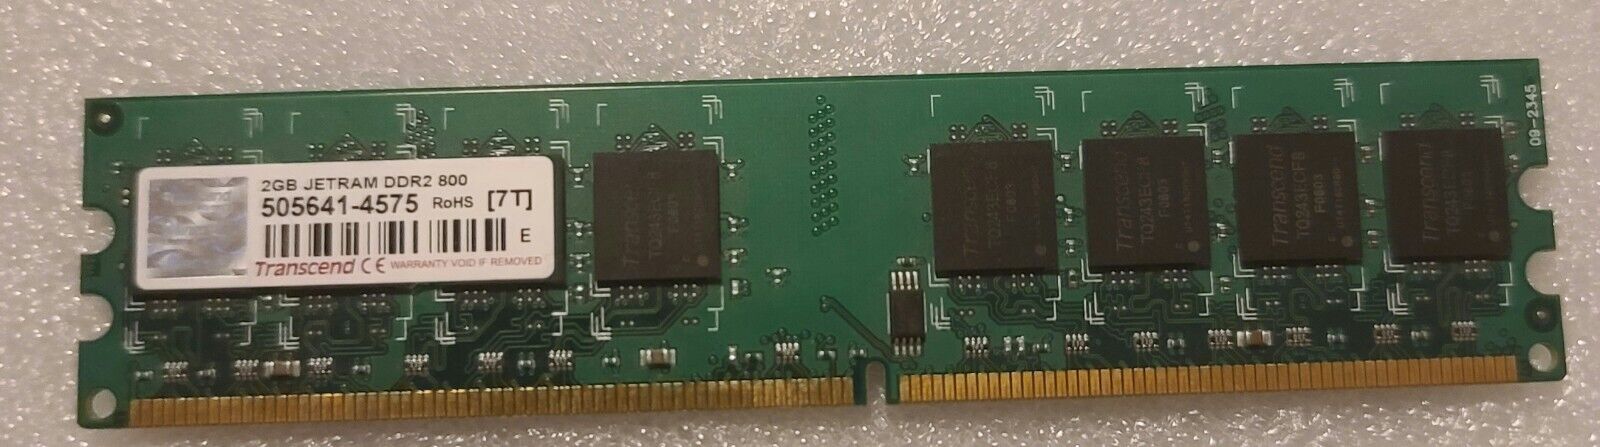 Transcend 2GB JETRAM DDR2 800 jm800qlu-2g ROHS {7t}